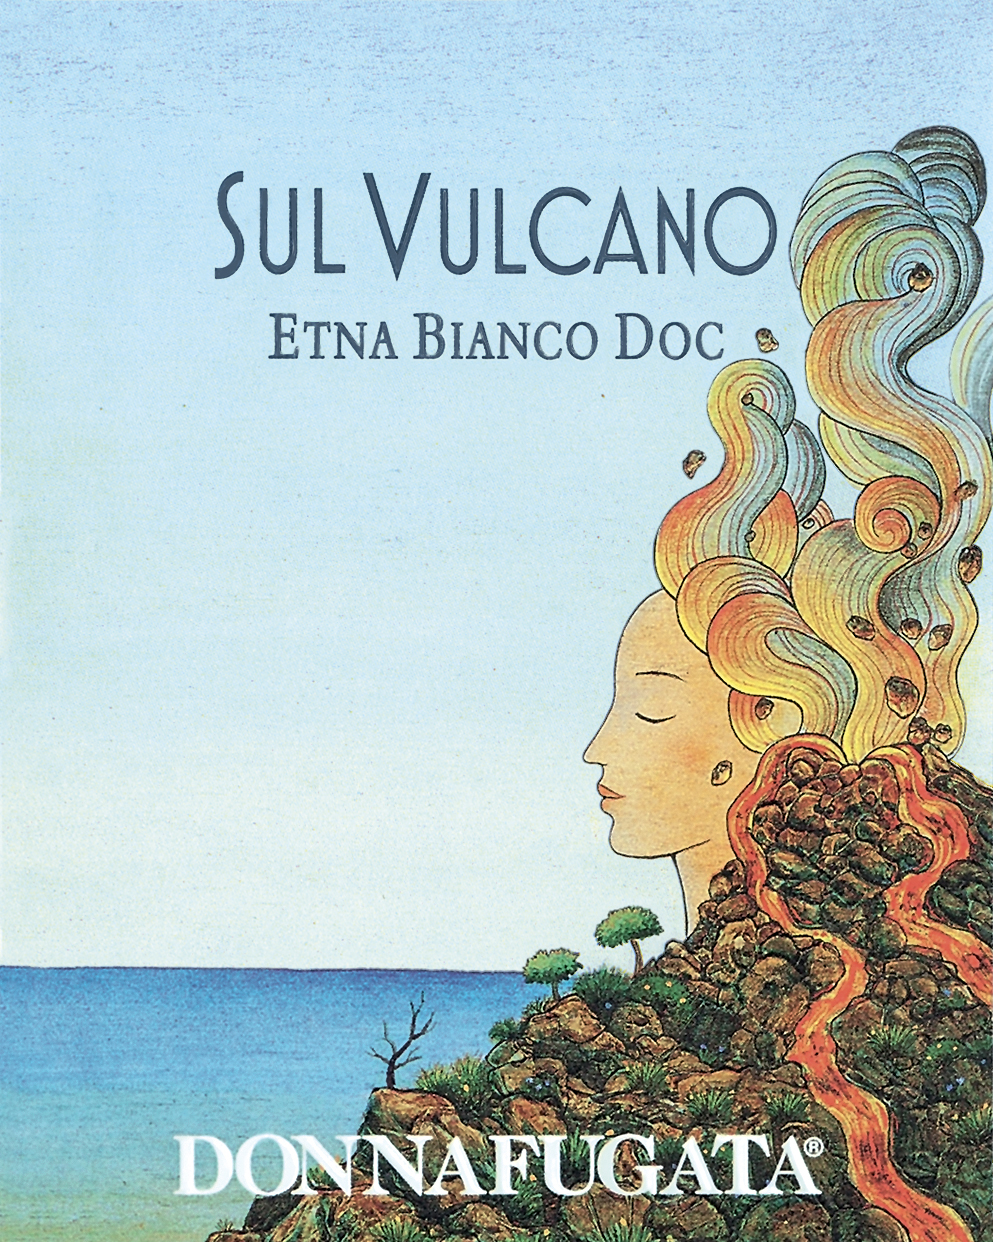 Donnafugata - Sul Vulcano - Etna Bianco label